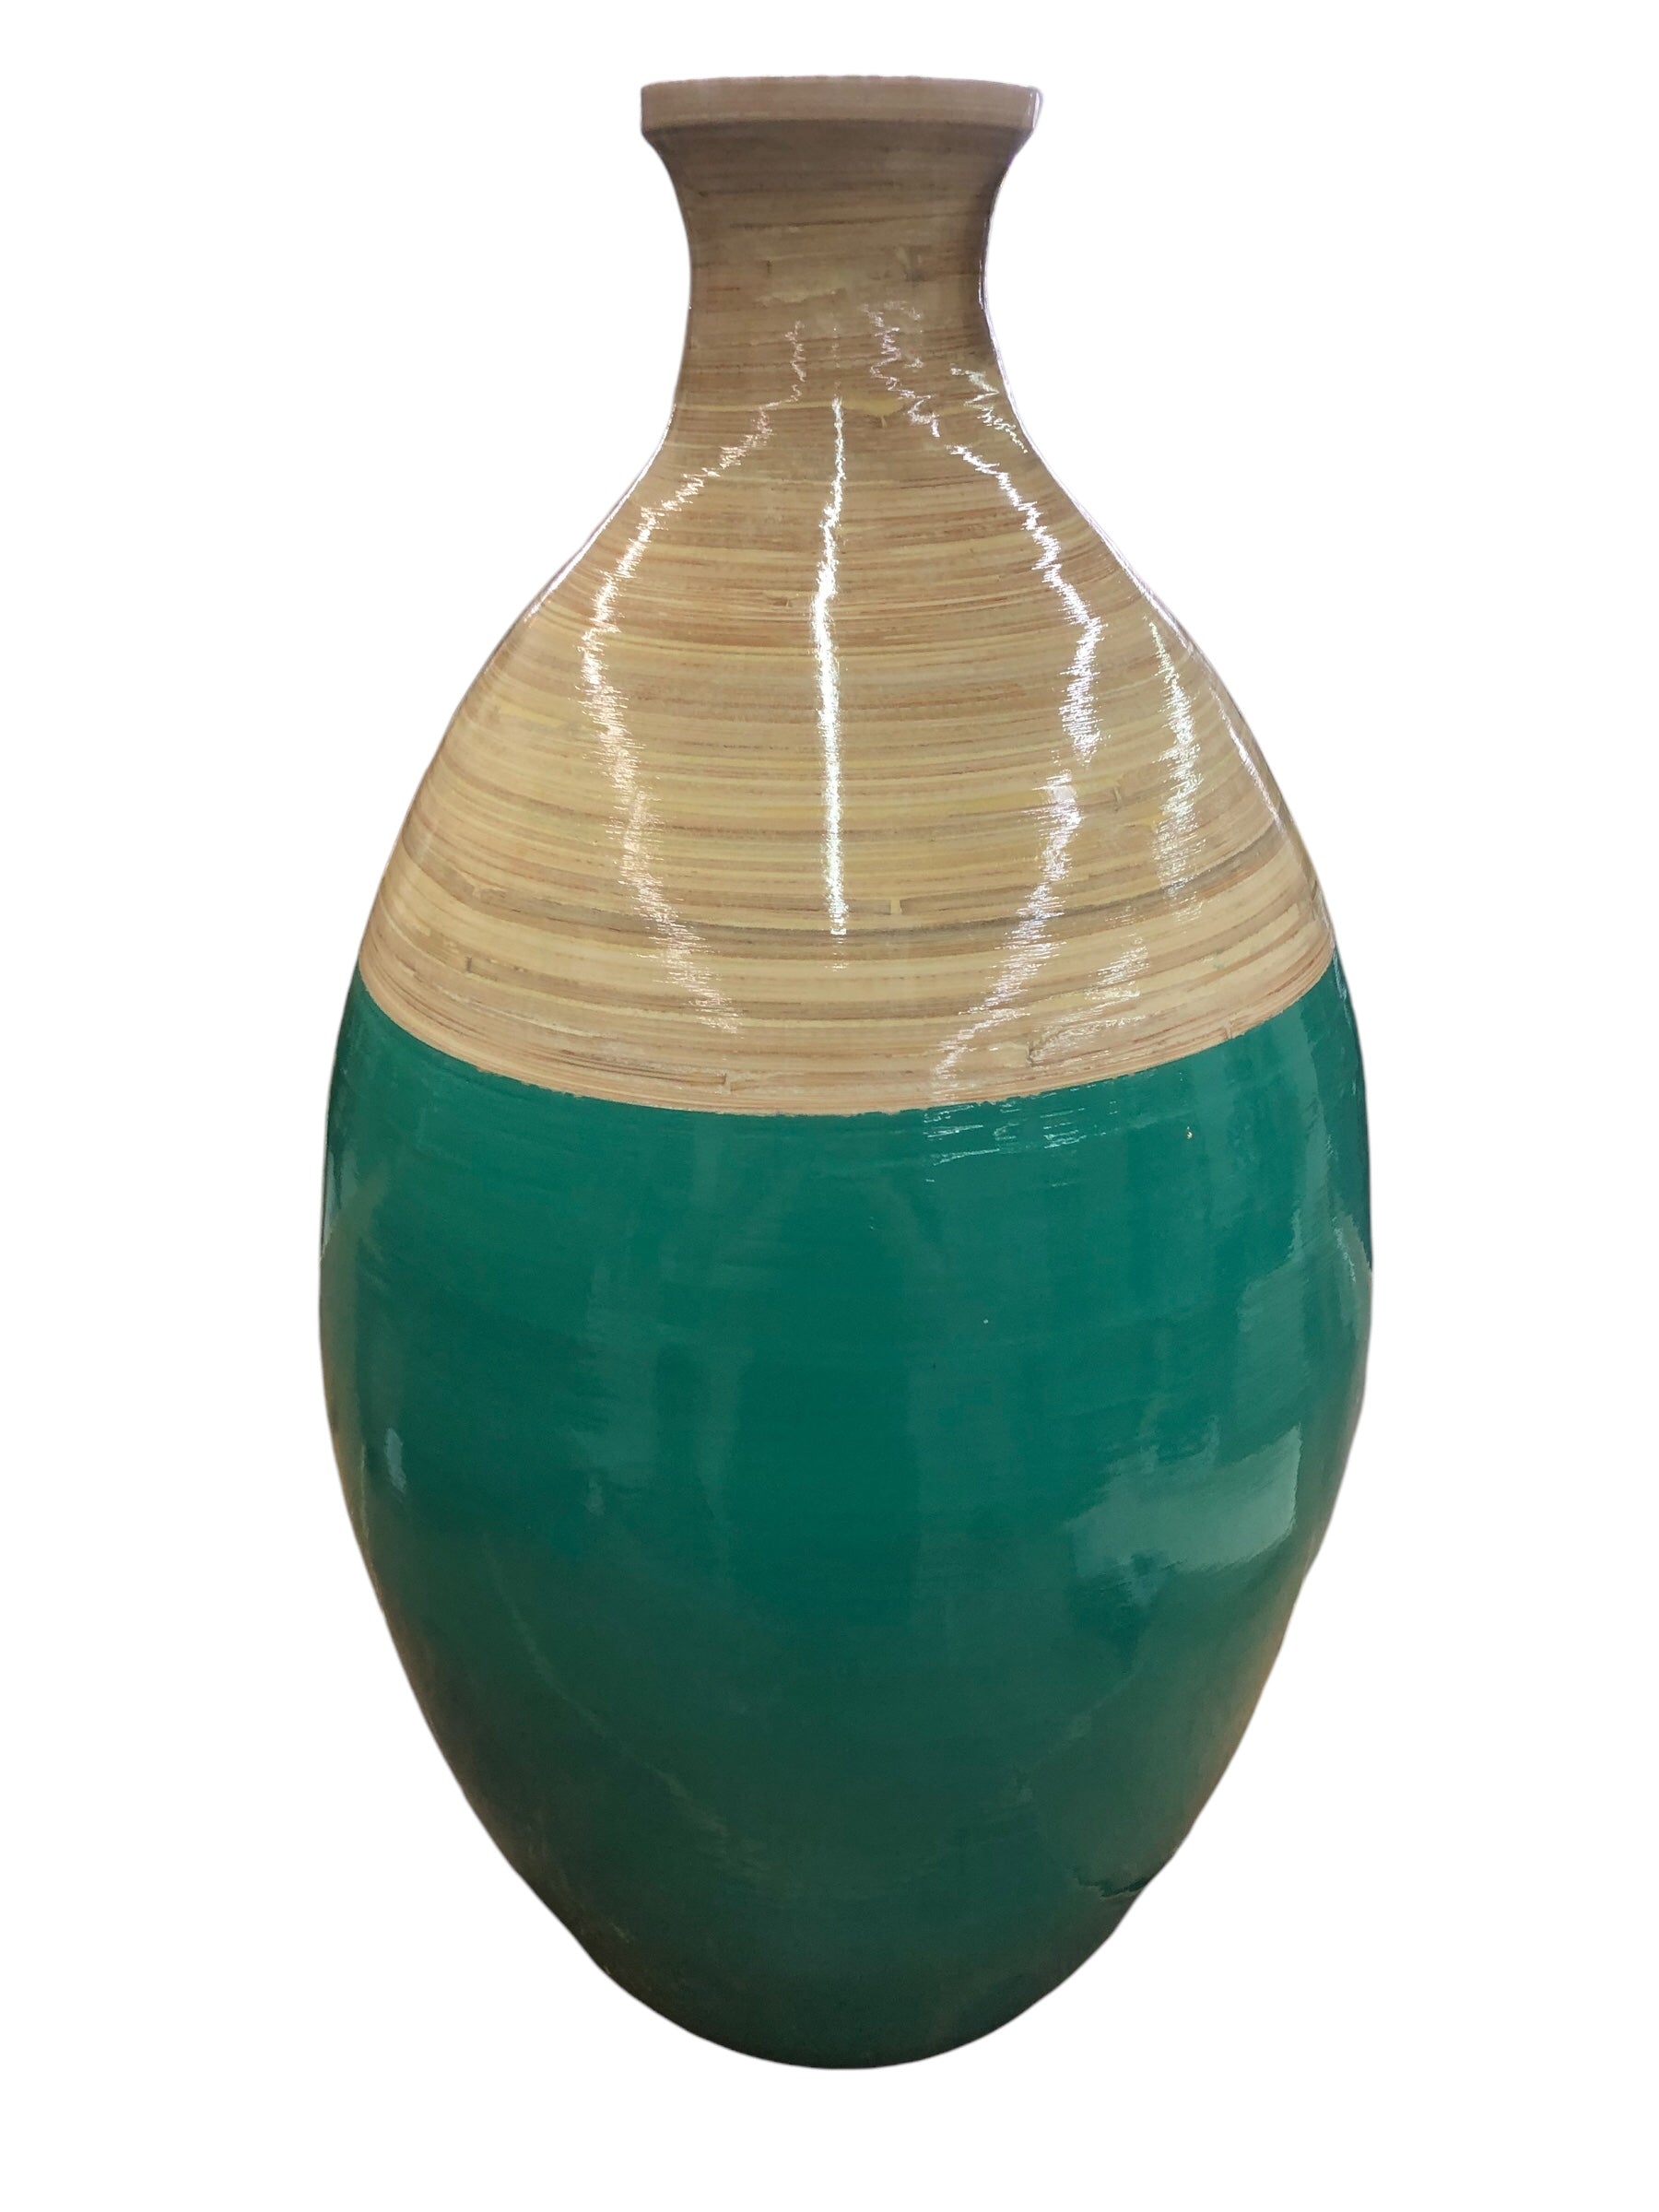 Plastic turquoise/ wood look floor vase